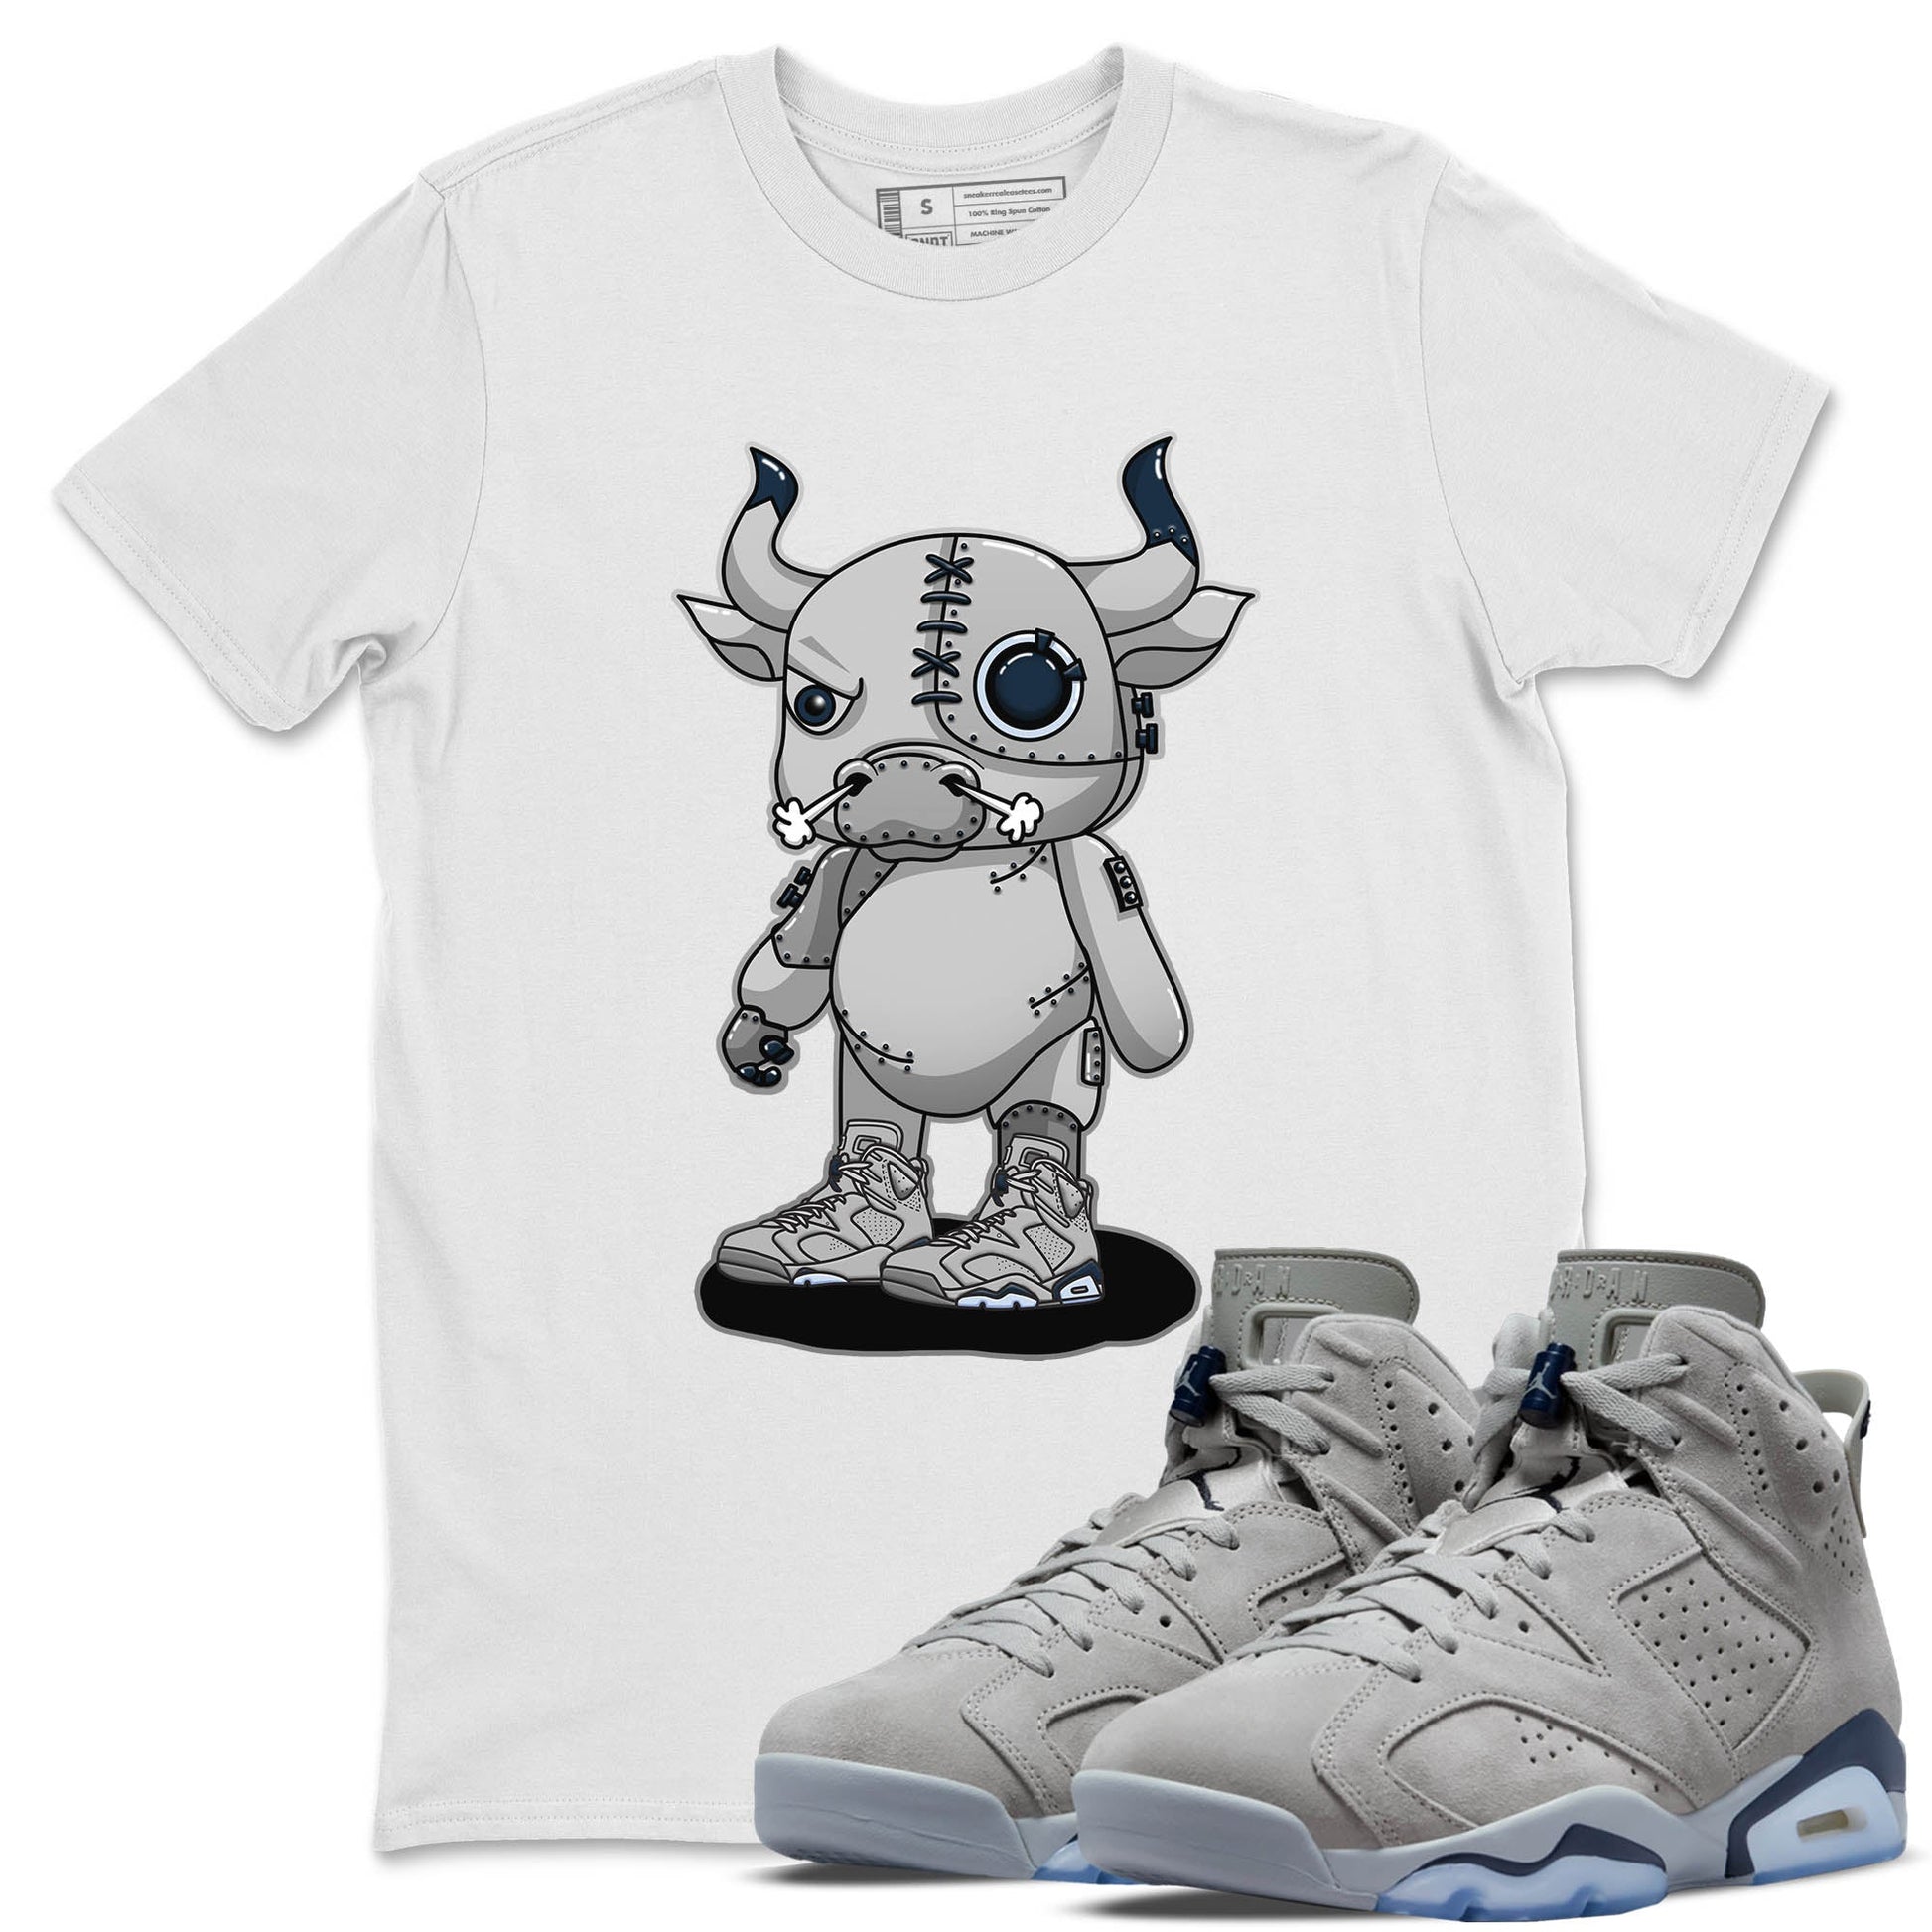 Jordan 6 Georgetown Sneaker Match Tees Cyborg Bull Sneaker Tees Jordan 6 Georgetown Sneaker Release Tees Unisex Shirts